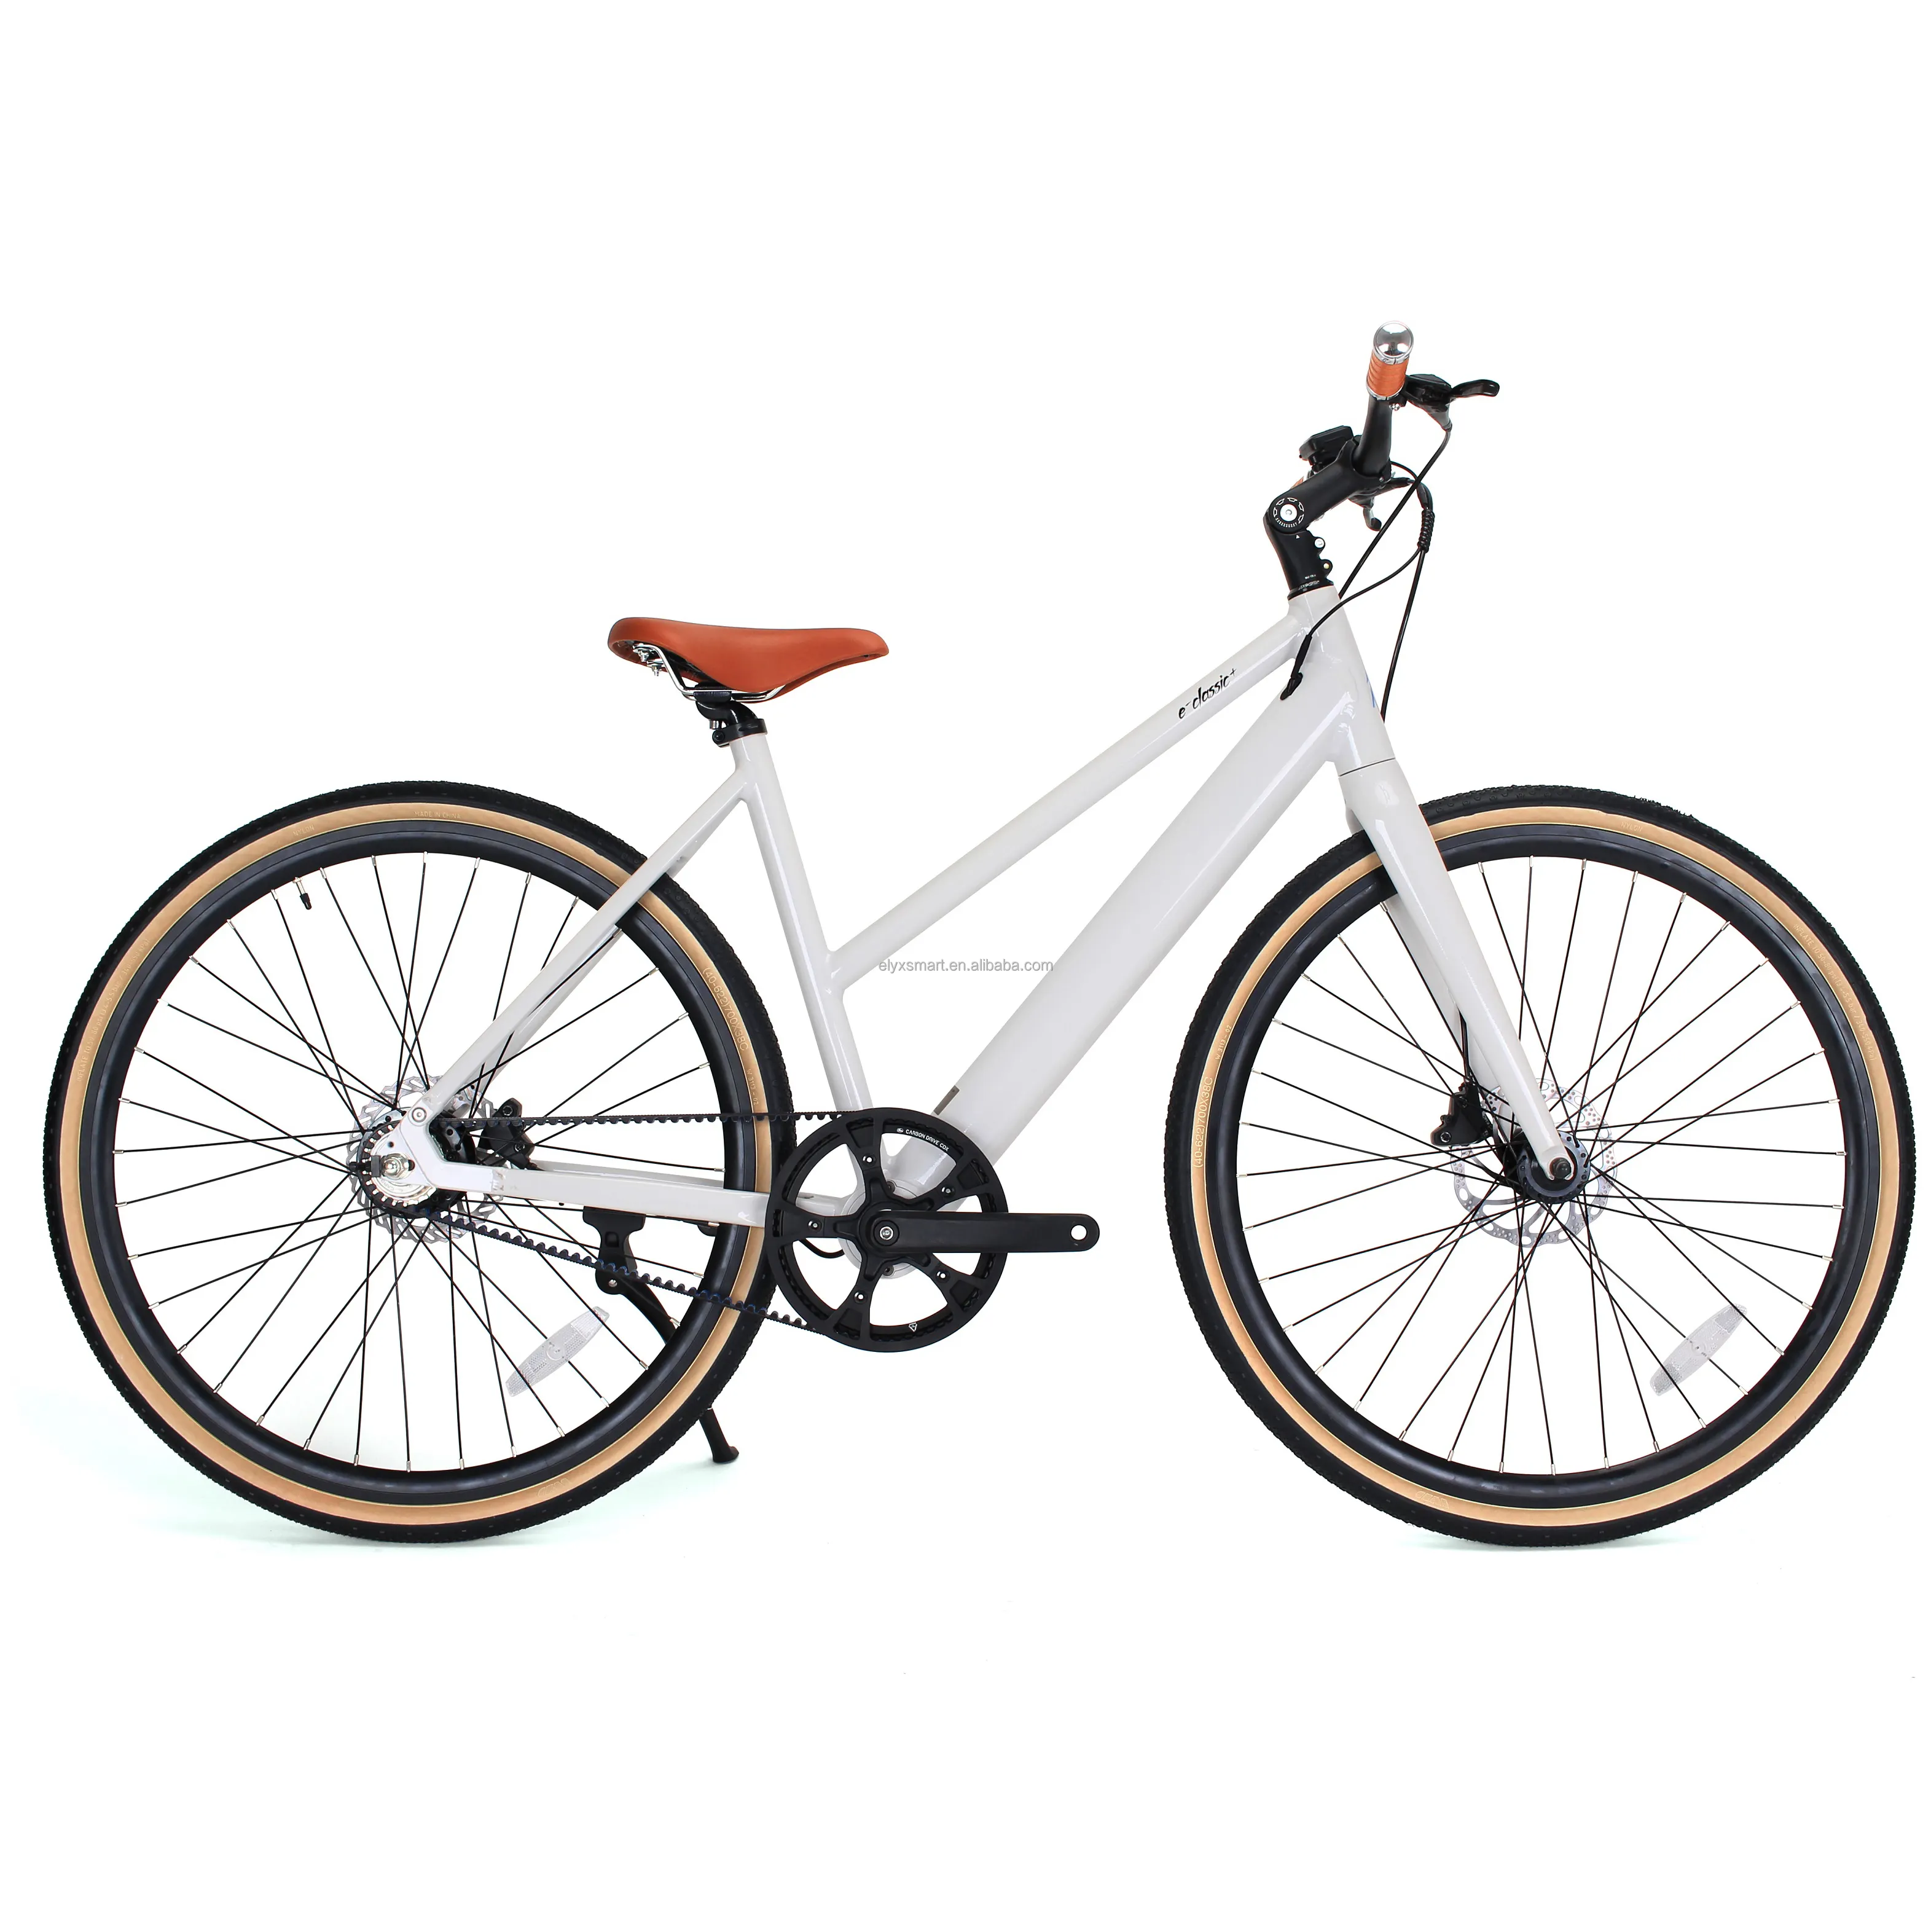 Achetez-en deux, obtenez-en un gratuit Vélo électrique Vanmoof Style 700C Gates Carbon Belt Single Speed Road Cycle Adult Electric City Bike